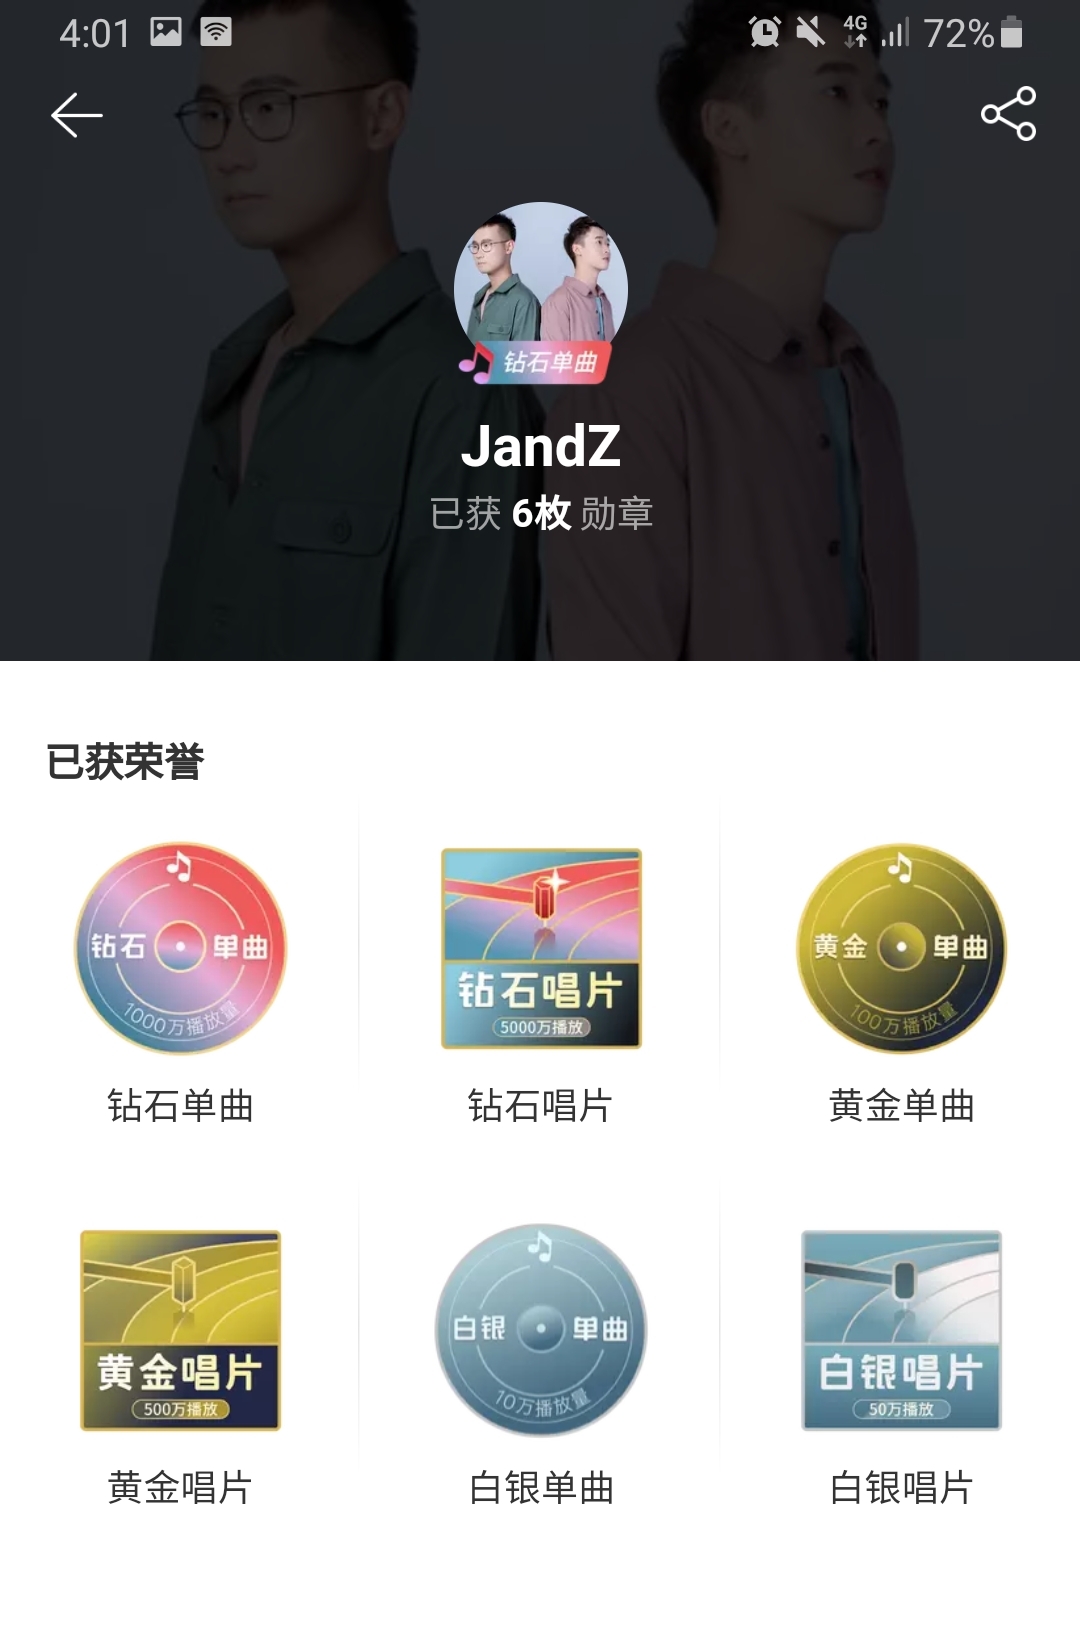 JandZ《太冲动的我》于网易云音乐获得钻石单曲千万播放点击。